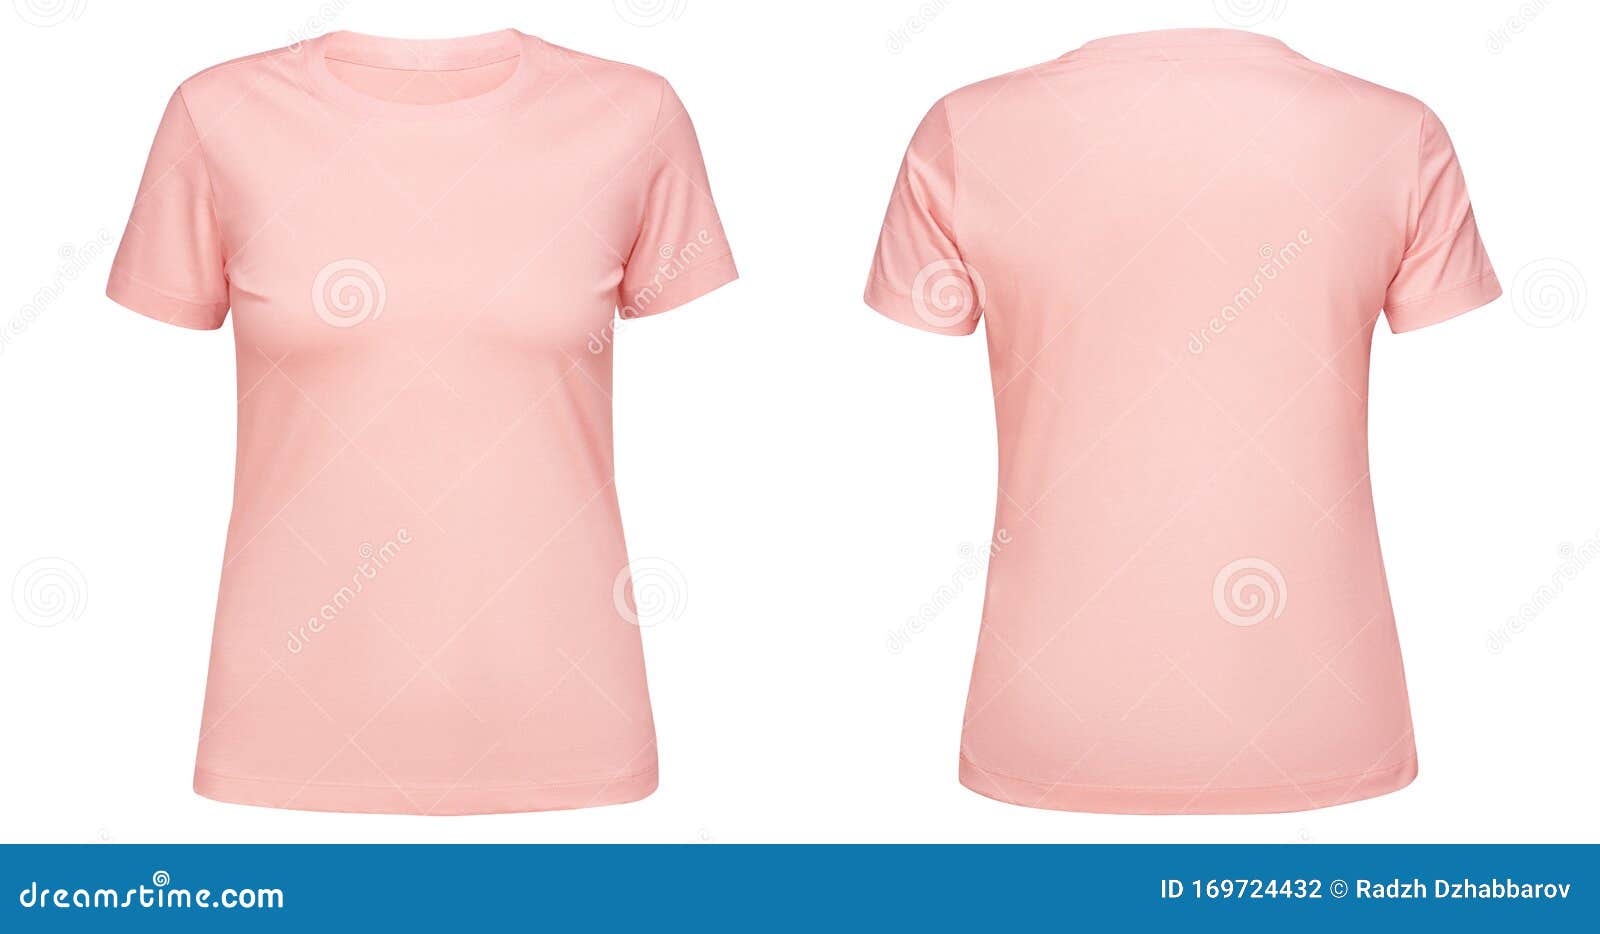 Camisa Cor-de-rosa Branca, Modelo De Camisa Frente E Verso, Isolada Em  Fundo Branco Montagem De Design De Camiseta Para Foto de Stock - Imagem de  ocasional, adolescente: 169724432